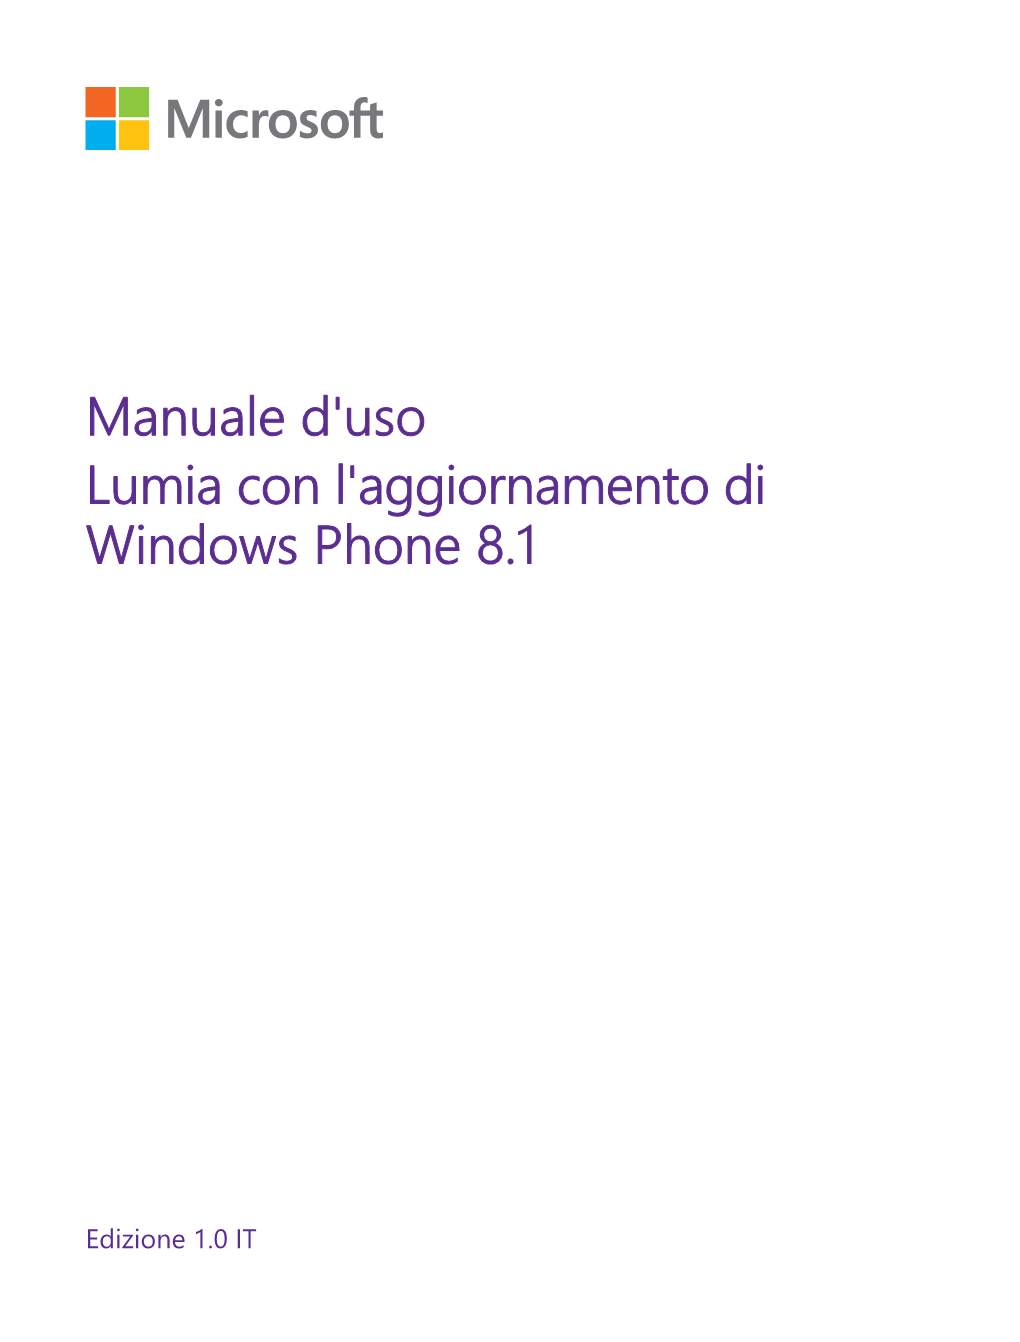 Manuale D'uso Del Lumia Con L'aggiornamento Di Windows Phone